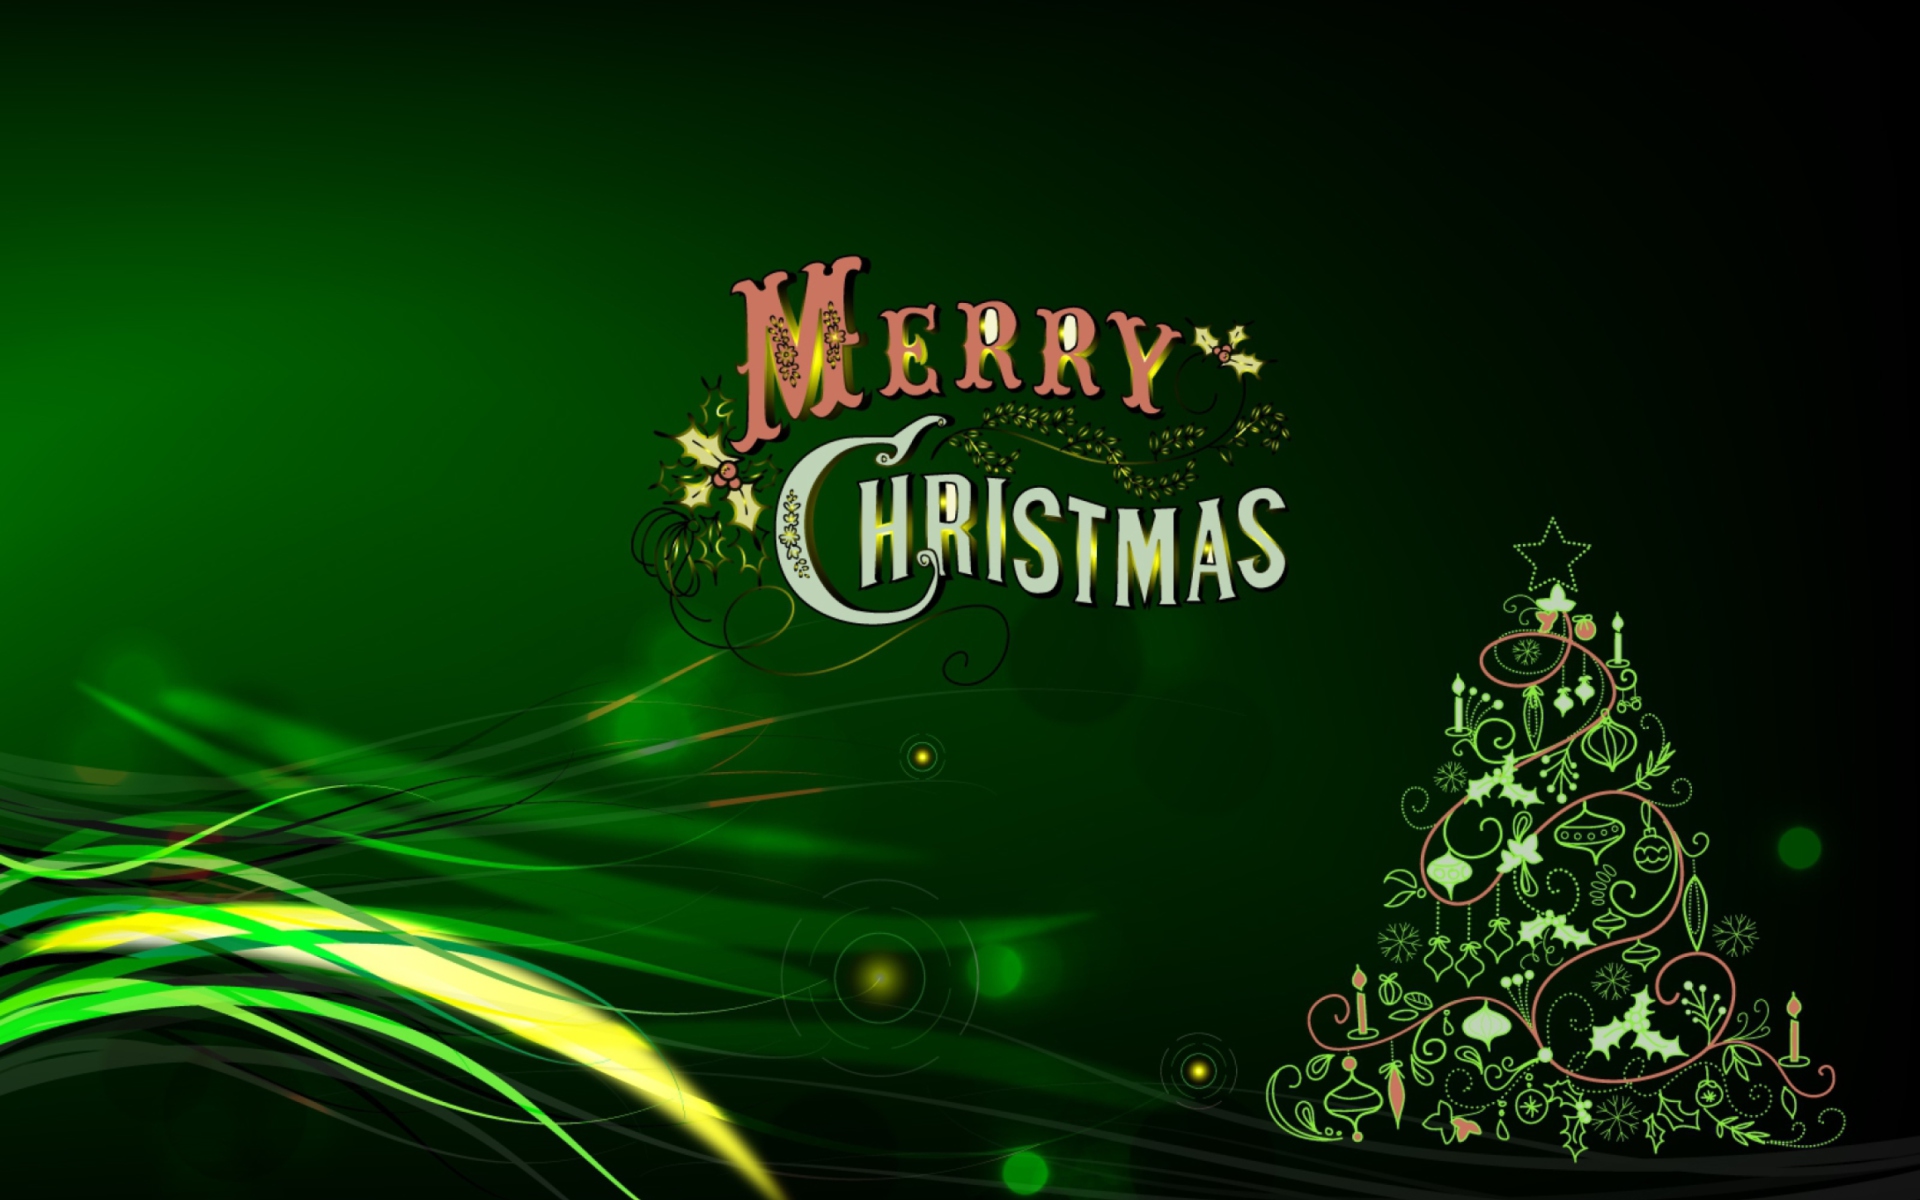 buon natale full hd wallpaper,verde,albero di natale,albero,decorazione natalizia,font